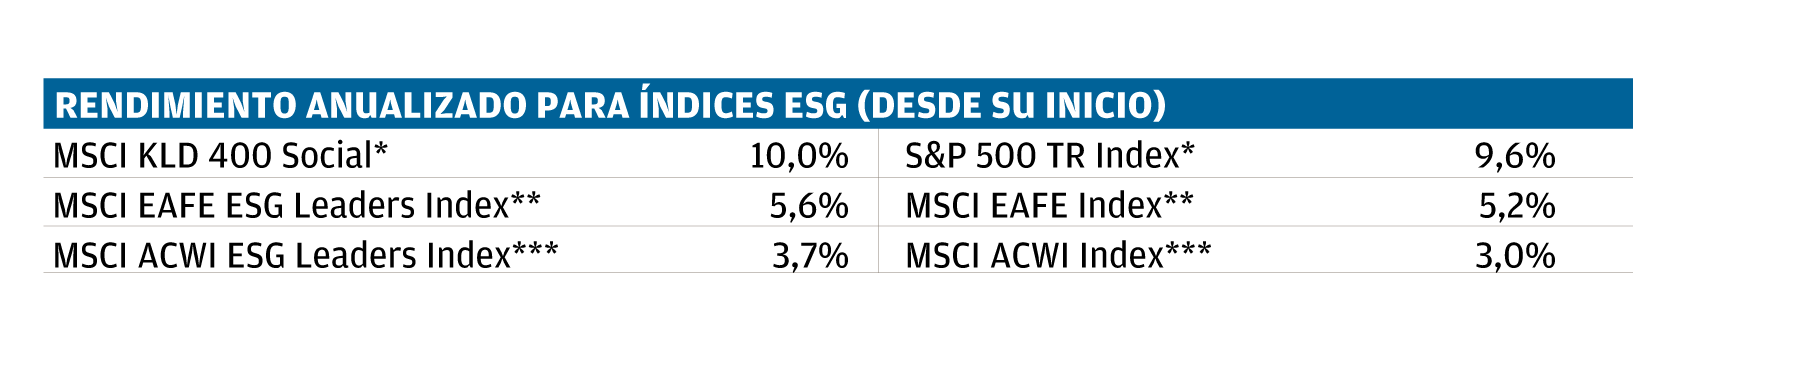 Chart 2: Rendimiento anualizado para indices ESG.